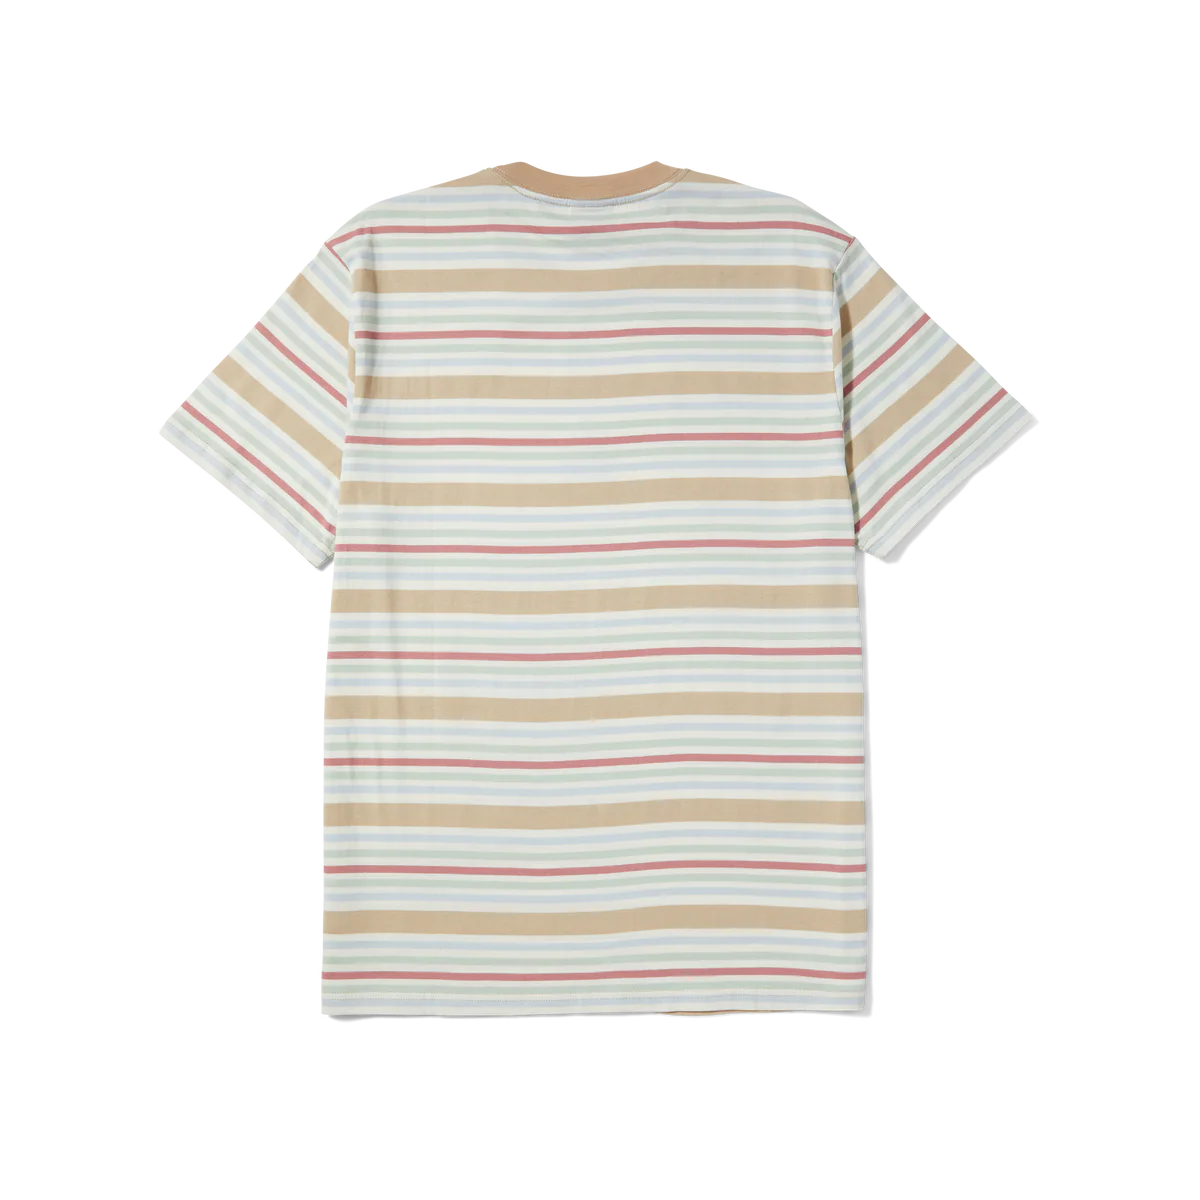 Cheshire S/s Stripe Knit Top (Cream)